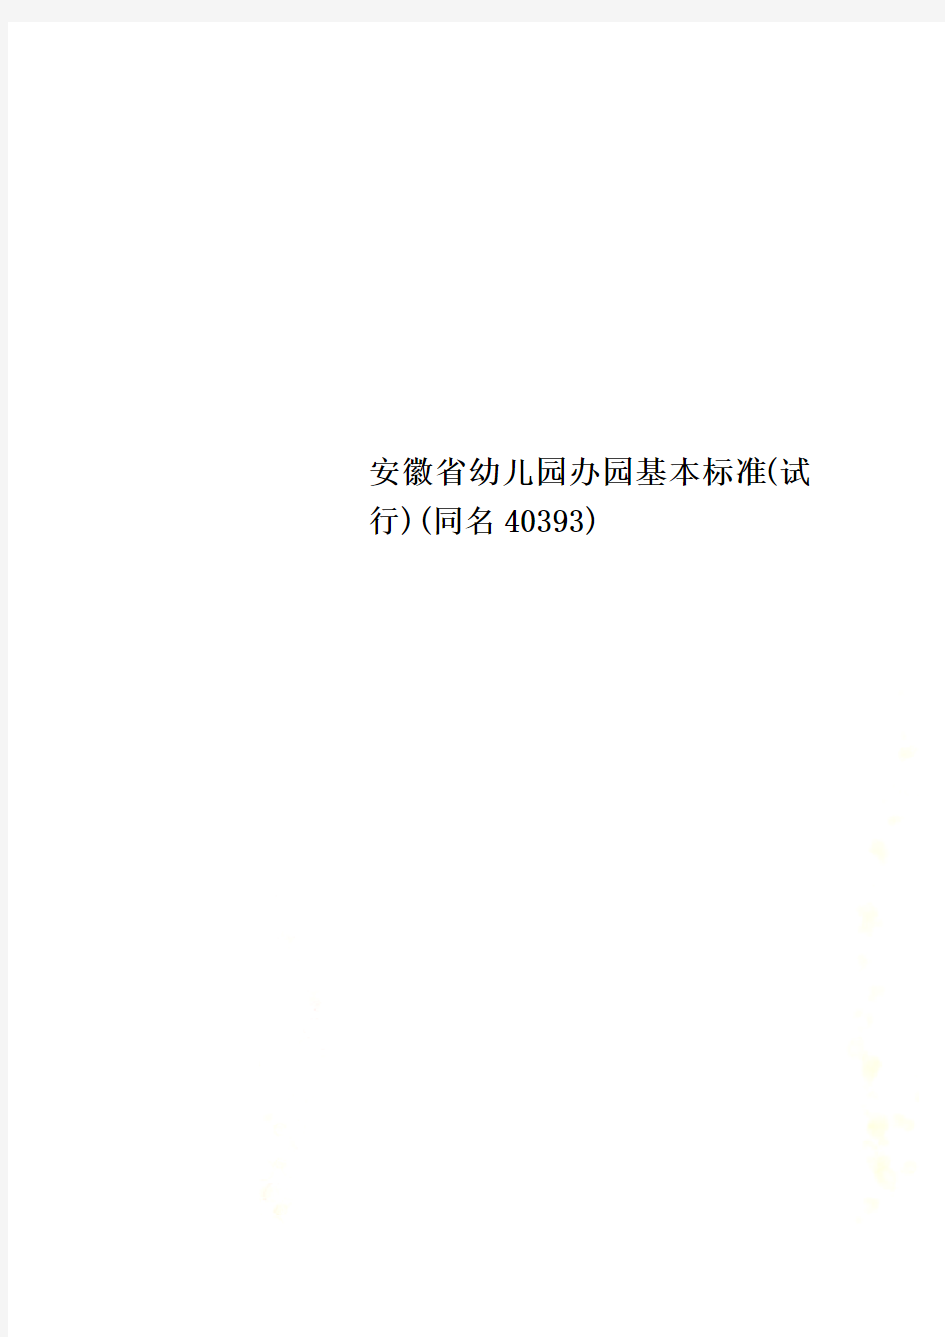 安徽省幼儿园办园基本标准(试行)(同名40393)